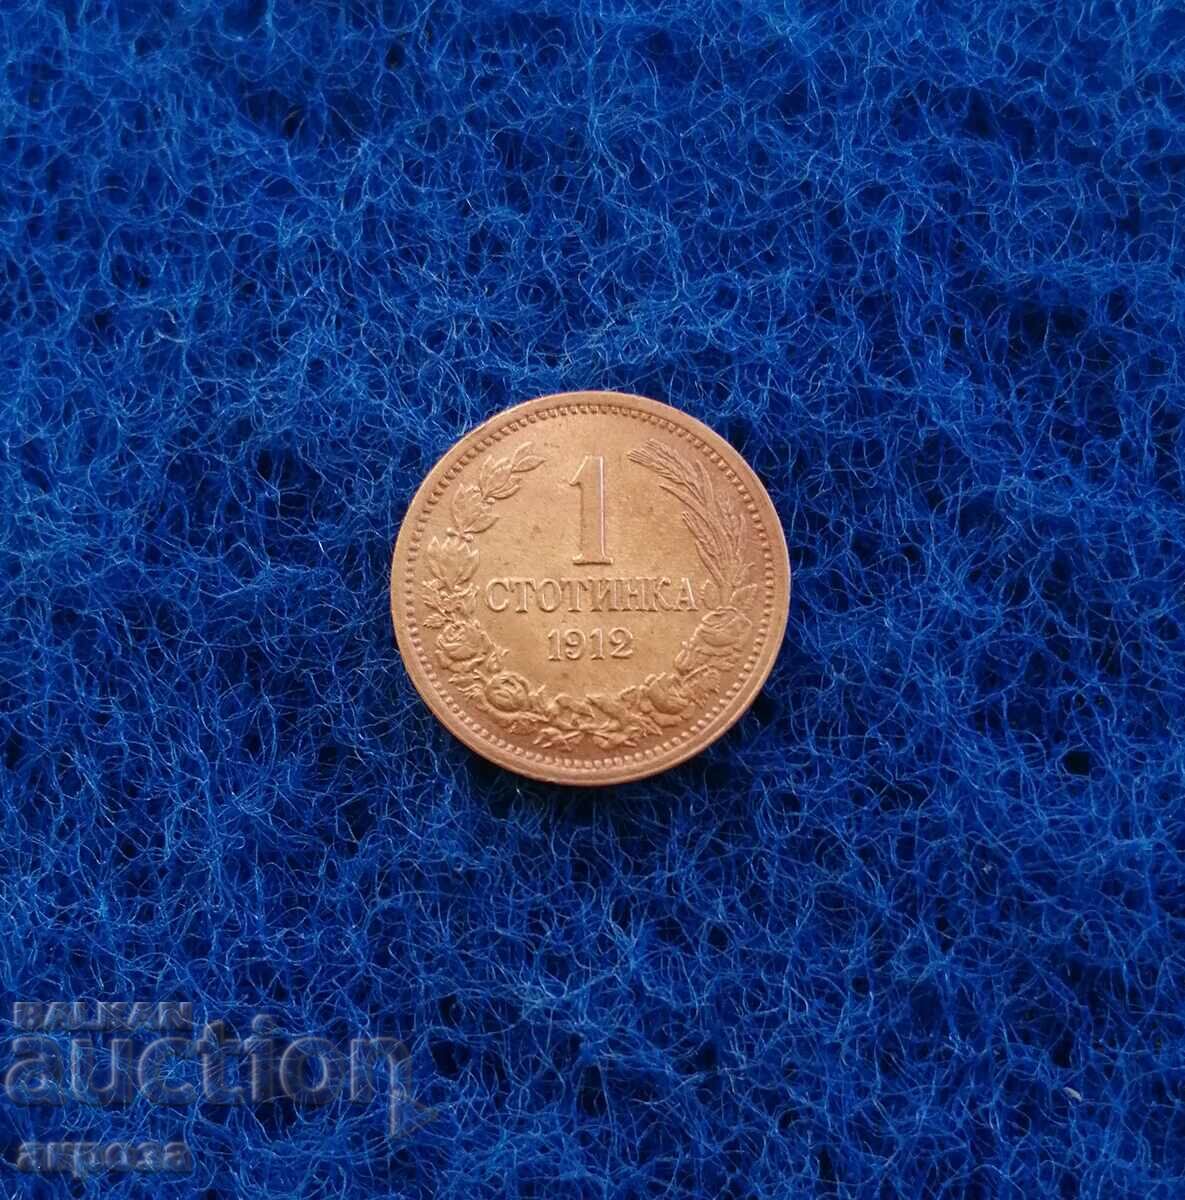 1 cent 1912 - excellent!